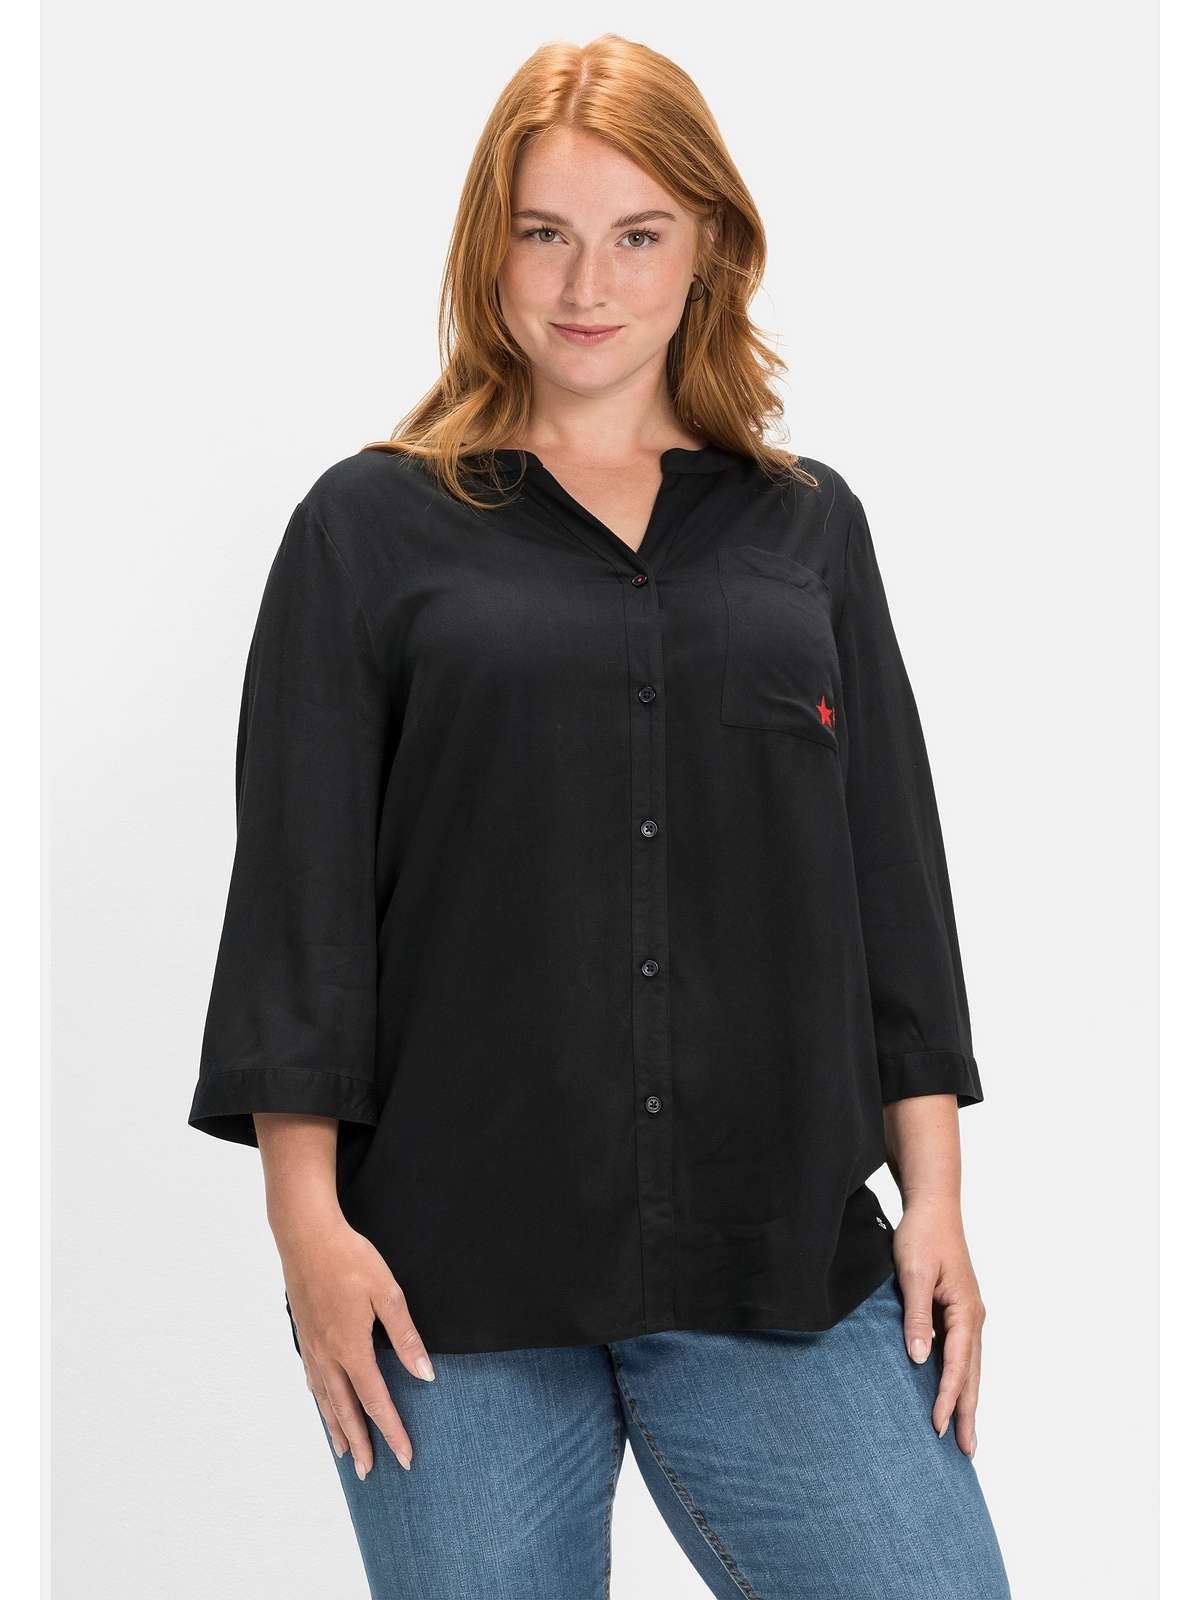 Блузка-рубашка с V-образным вырезом из вискозного твила.